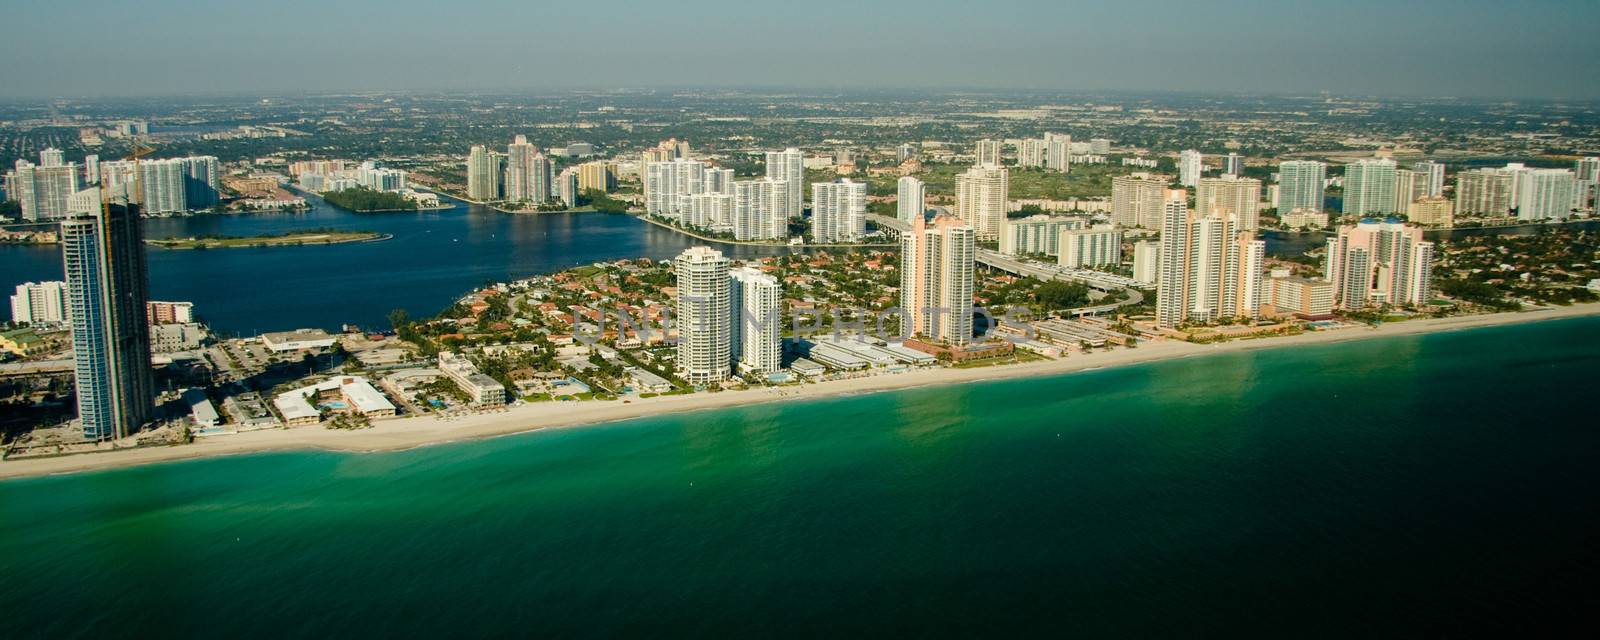 Miami city skyline by CelsoDiniz